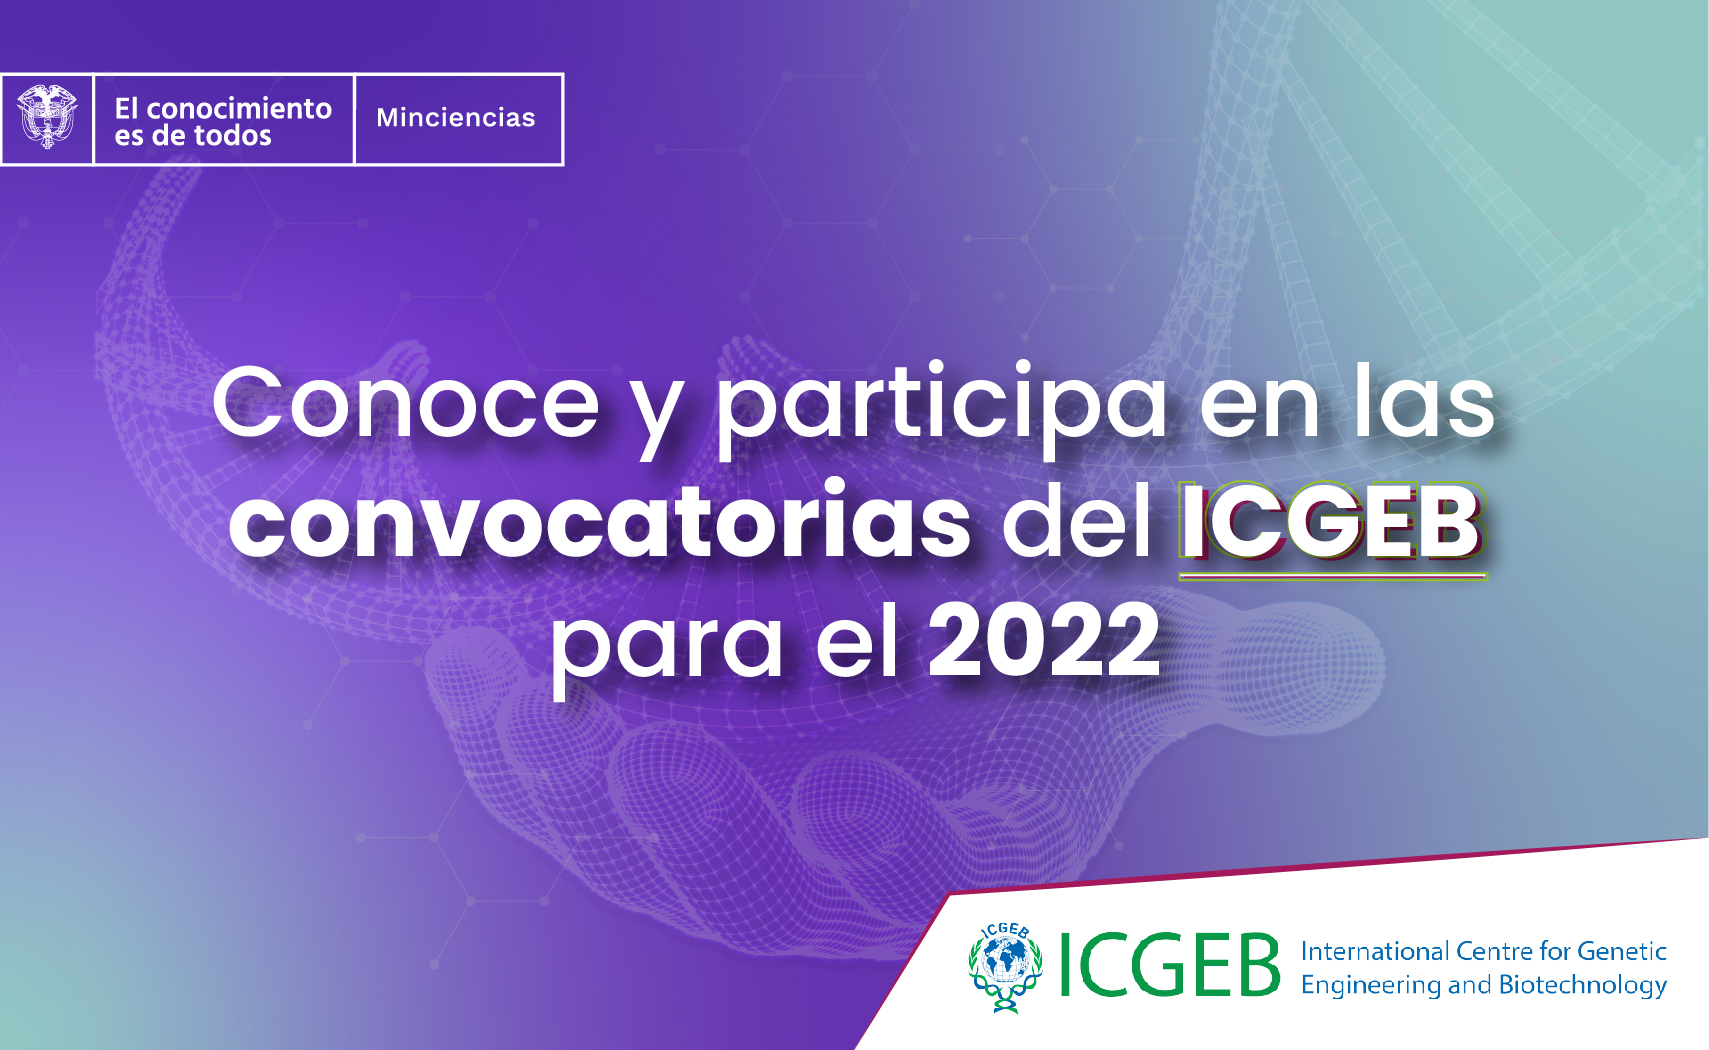 El Ministerio de Ciencia Tecnología e Innovación - Minciencias, como representante de Colombia ante el ICGEB, invita a todos los interesados de nacionalidad colombiana a conocer las diferentes oportunidades de formación .